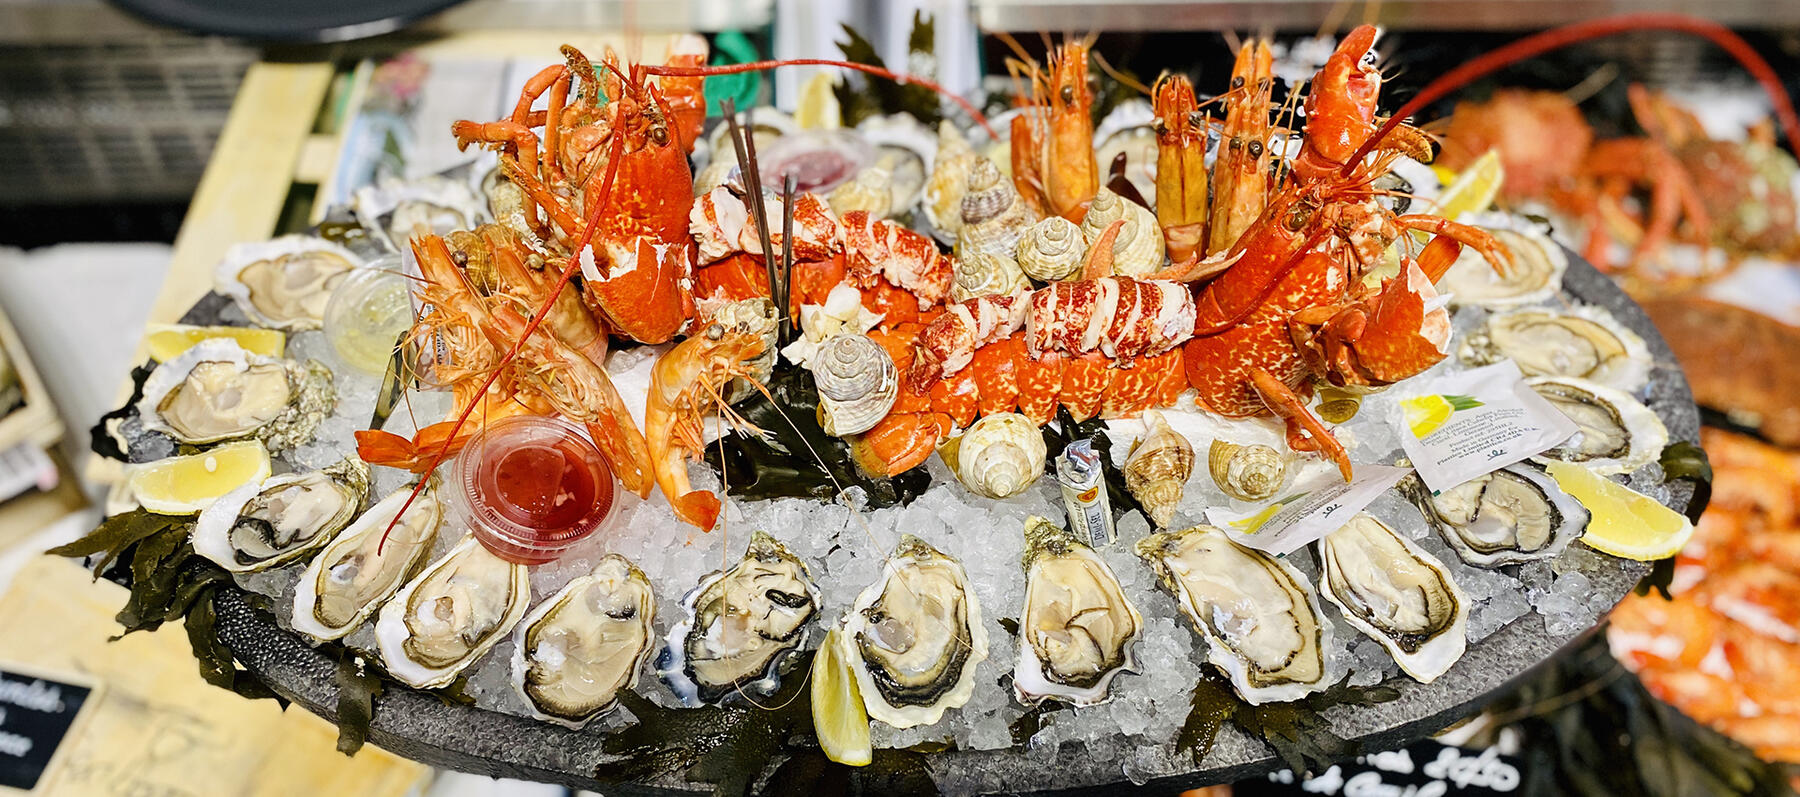 Seaquest vous propose des plateaux de fruits mer délicieux à La Ciotat